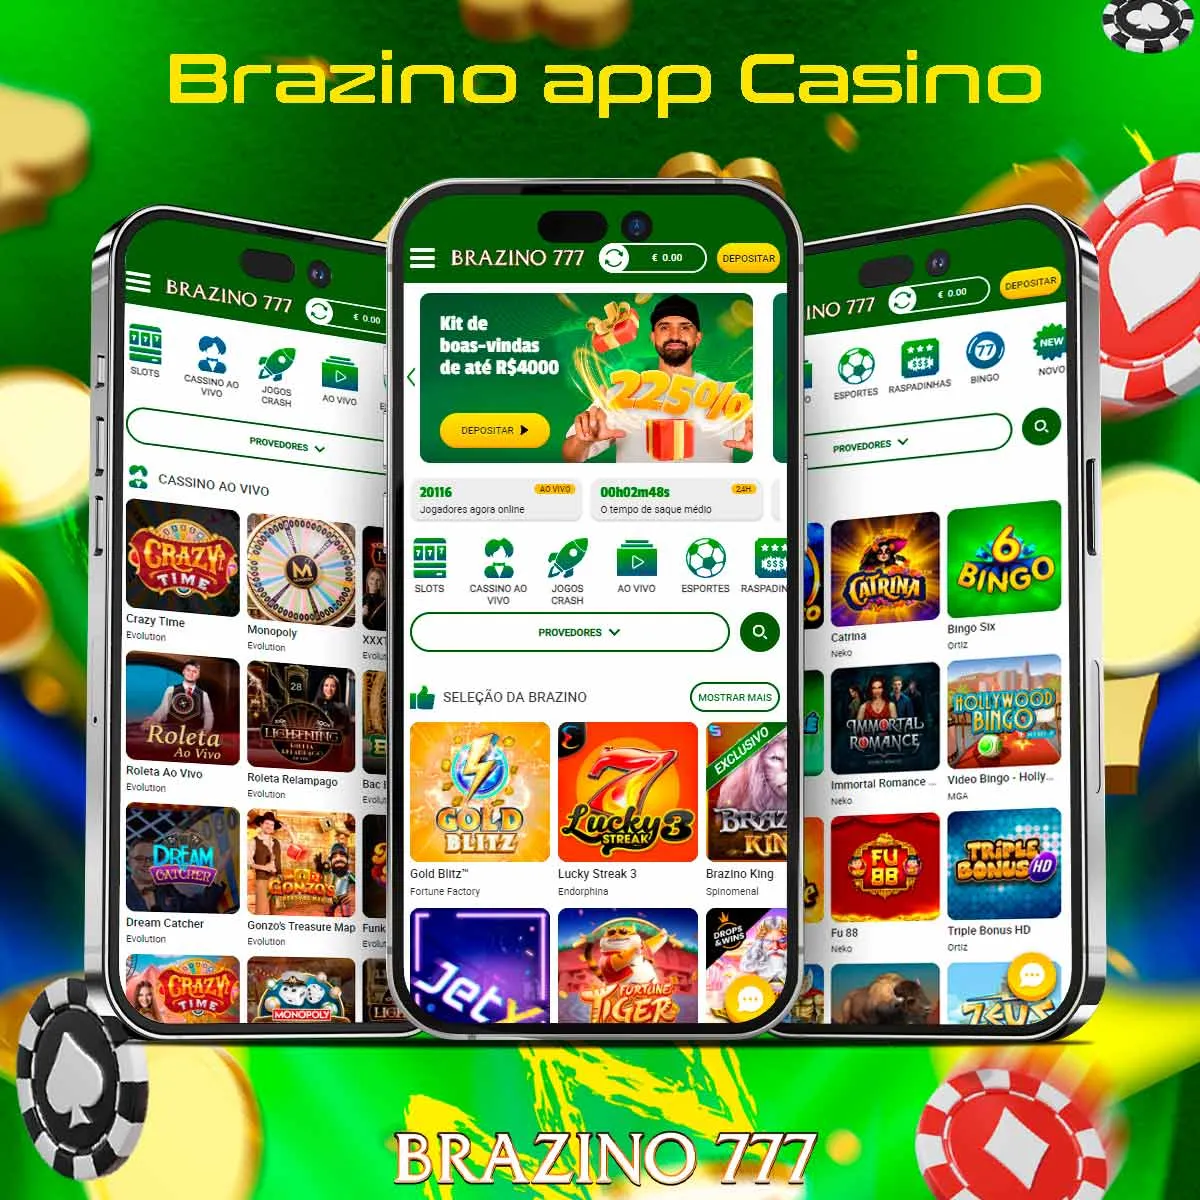 Revisão do site de apostas no aplicativo do cassino Brazino777